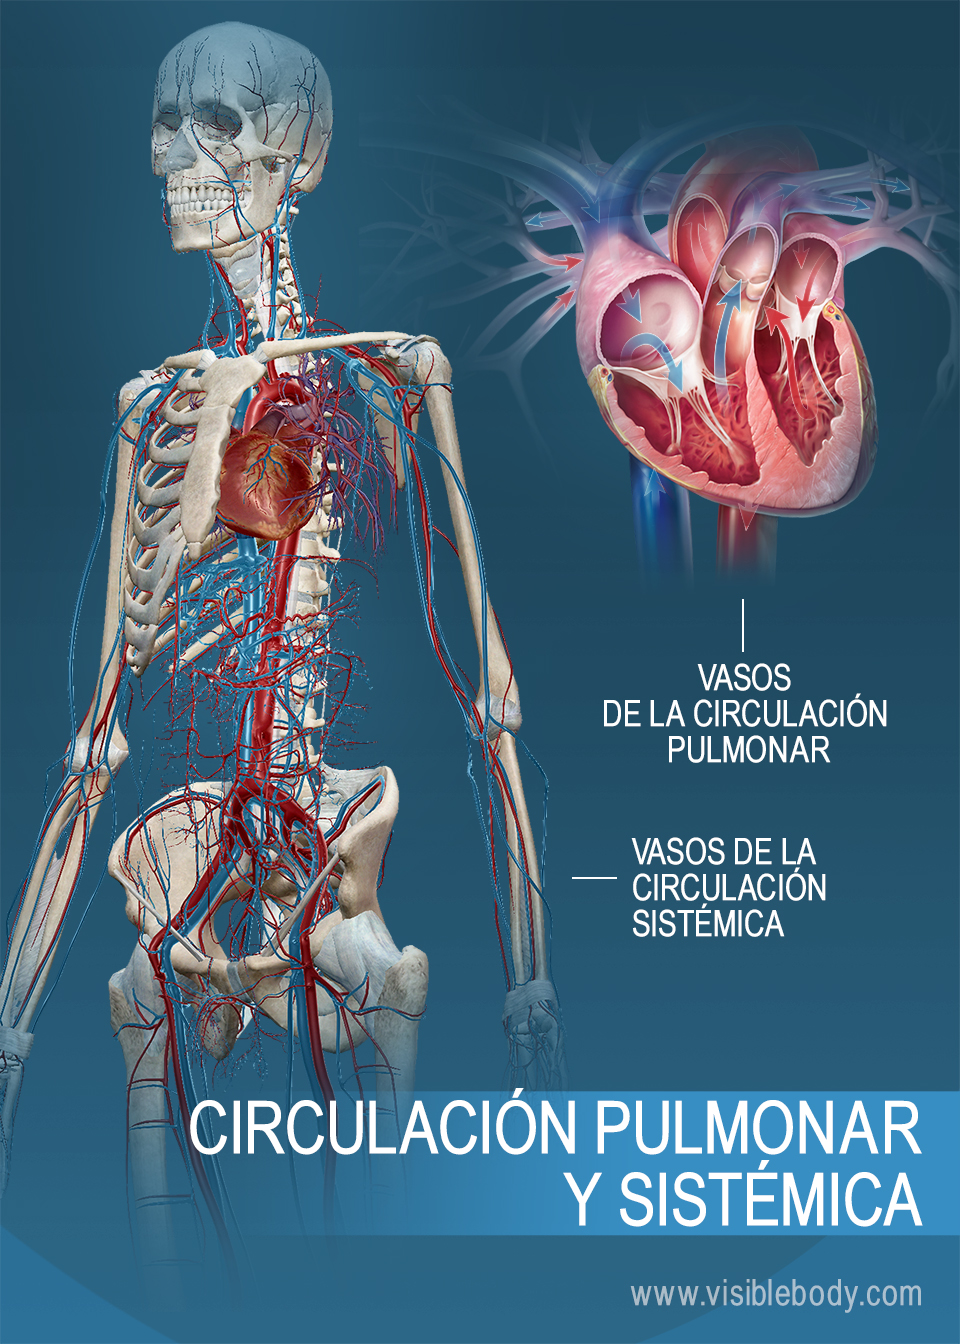 Vasos de la circulación sistémica y la circulación pulmonar